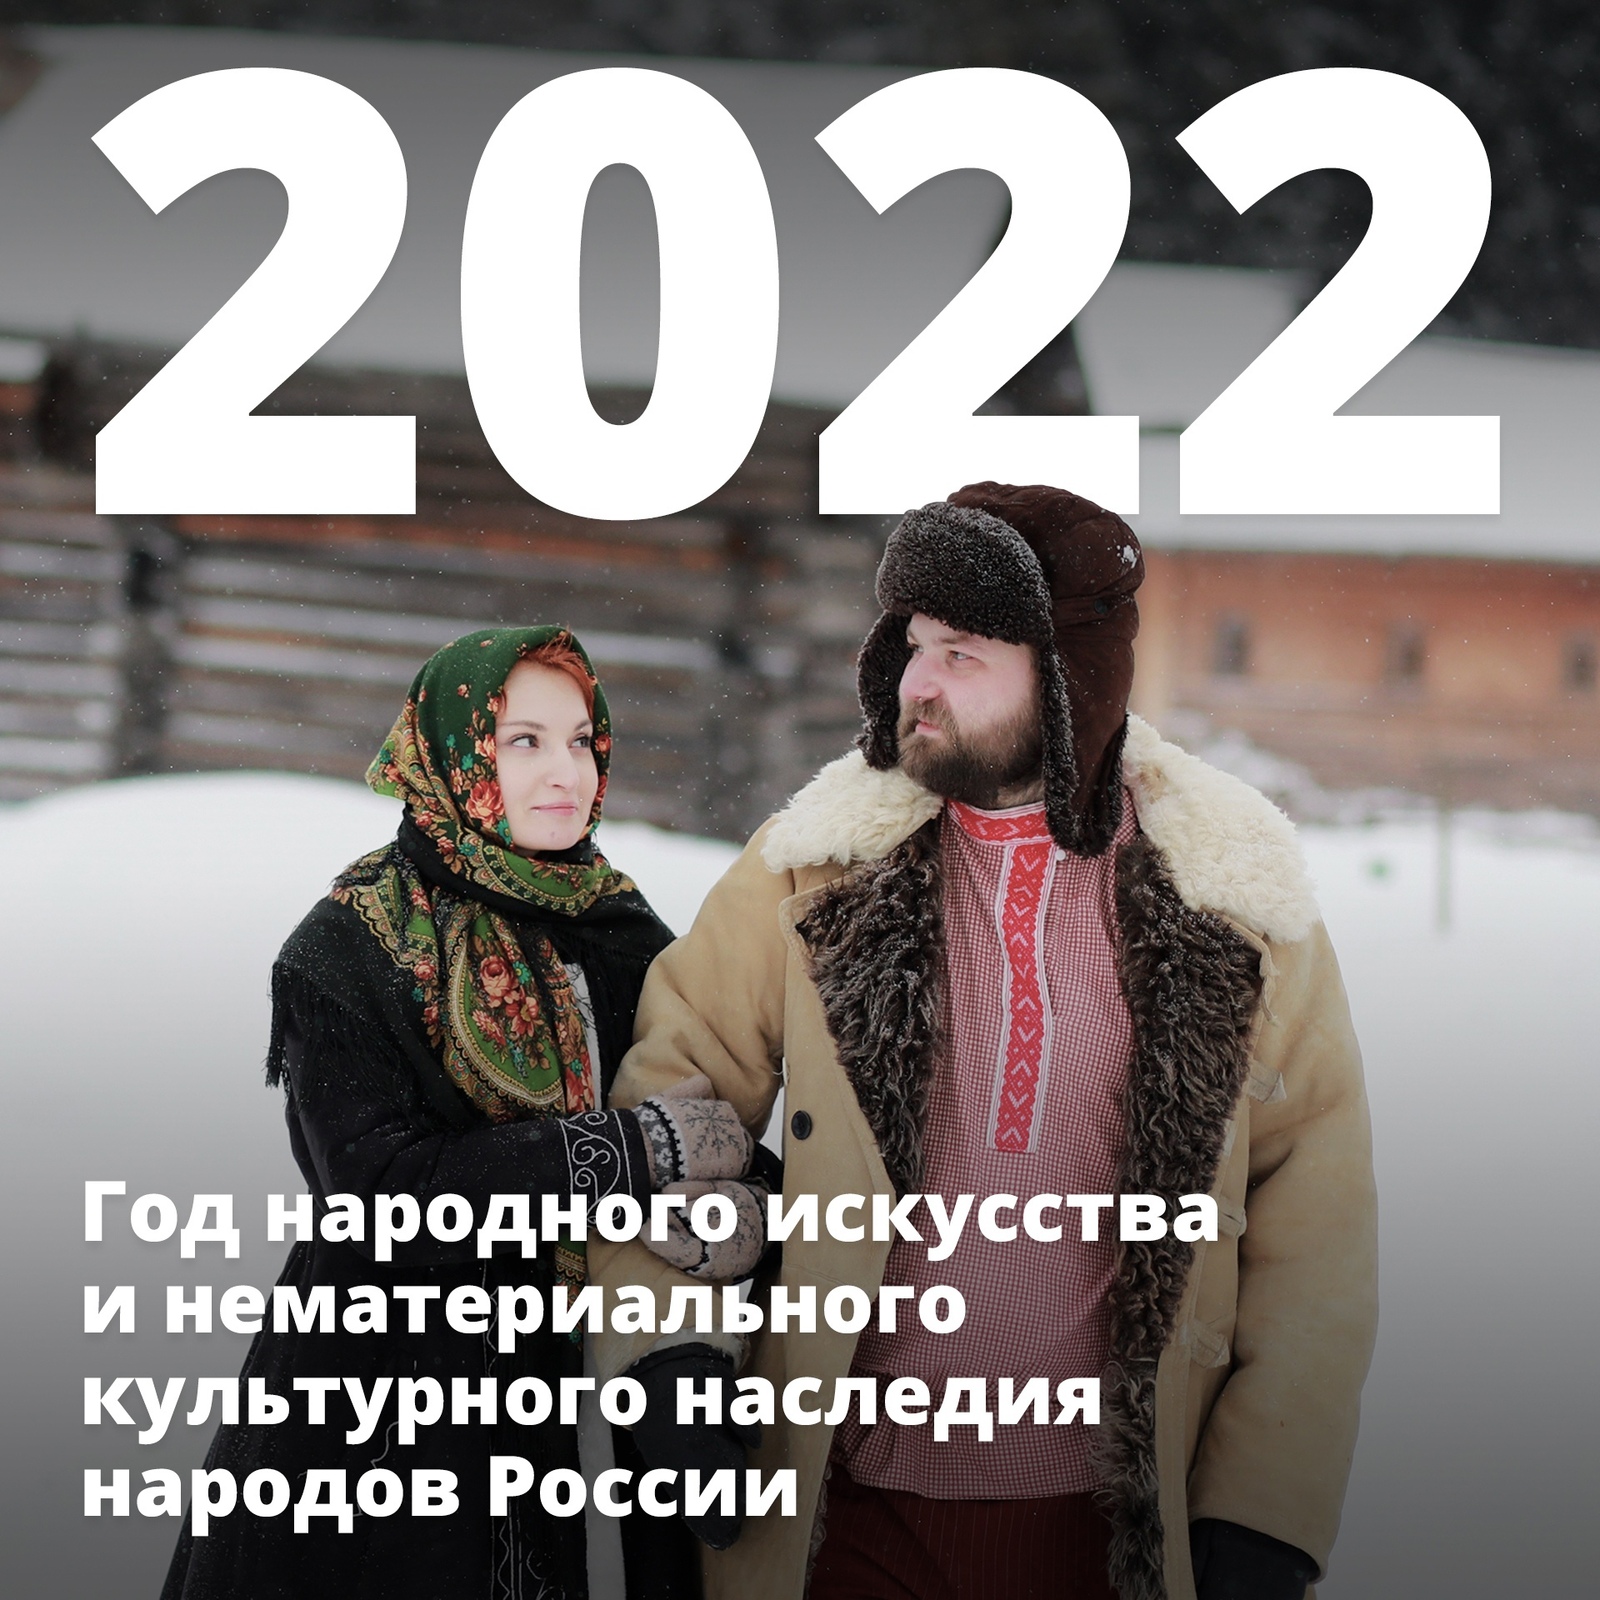 2022 год объявлен Годом народного искусства и нематериального культурного наследия народов России